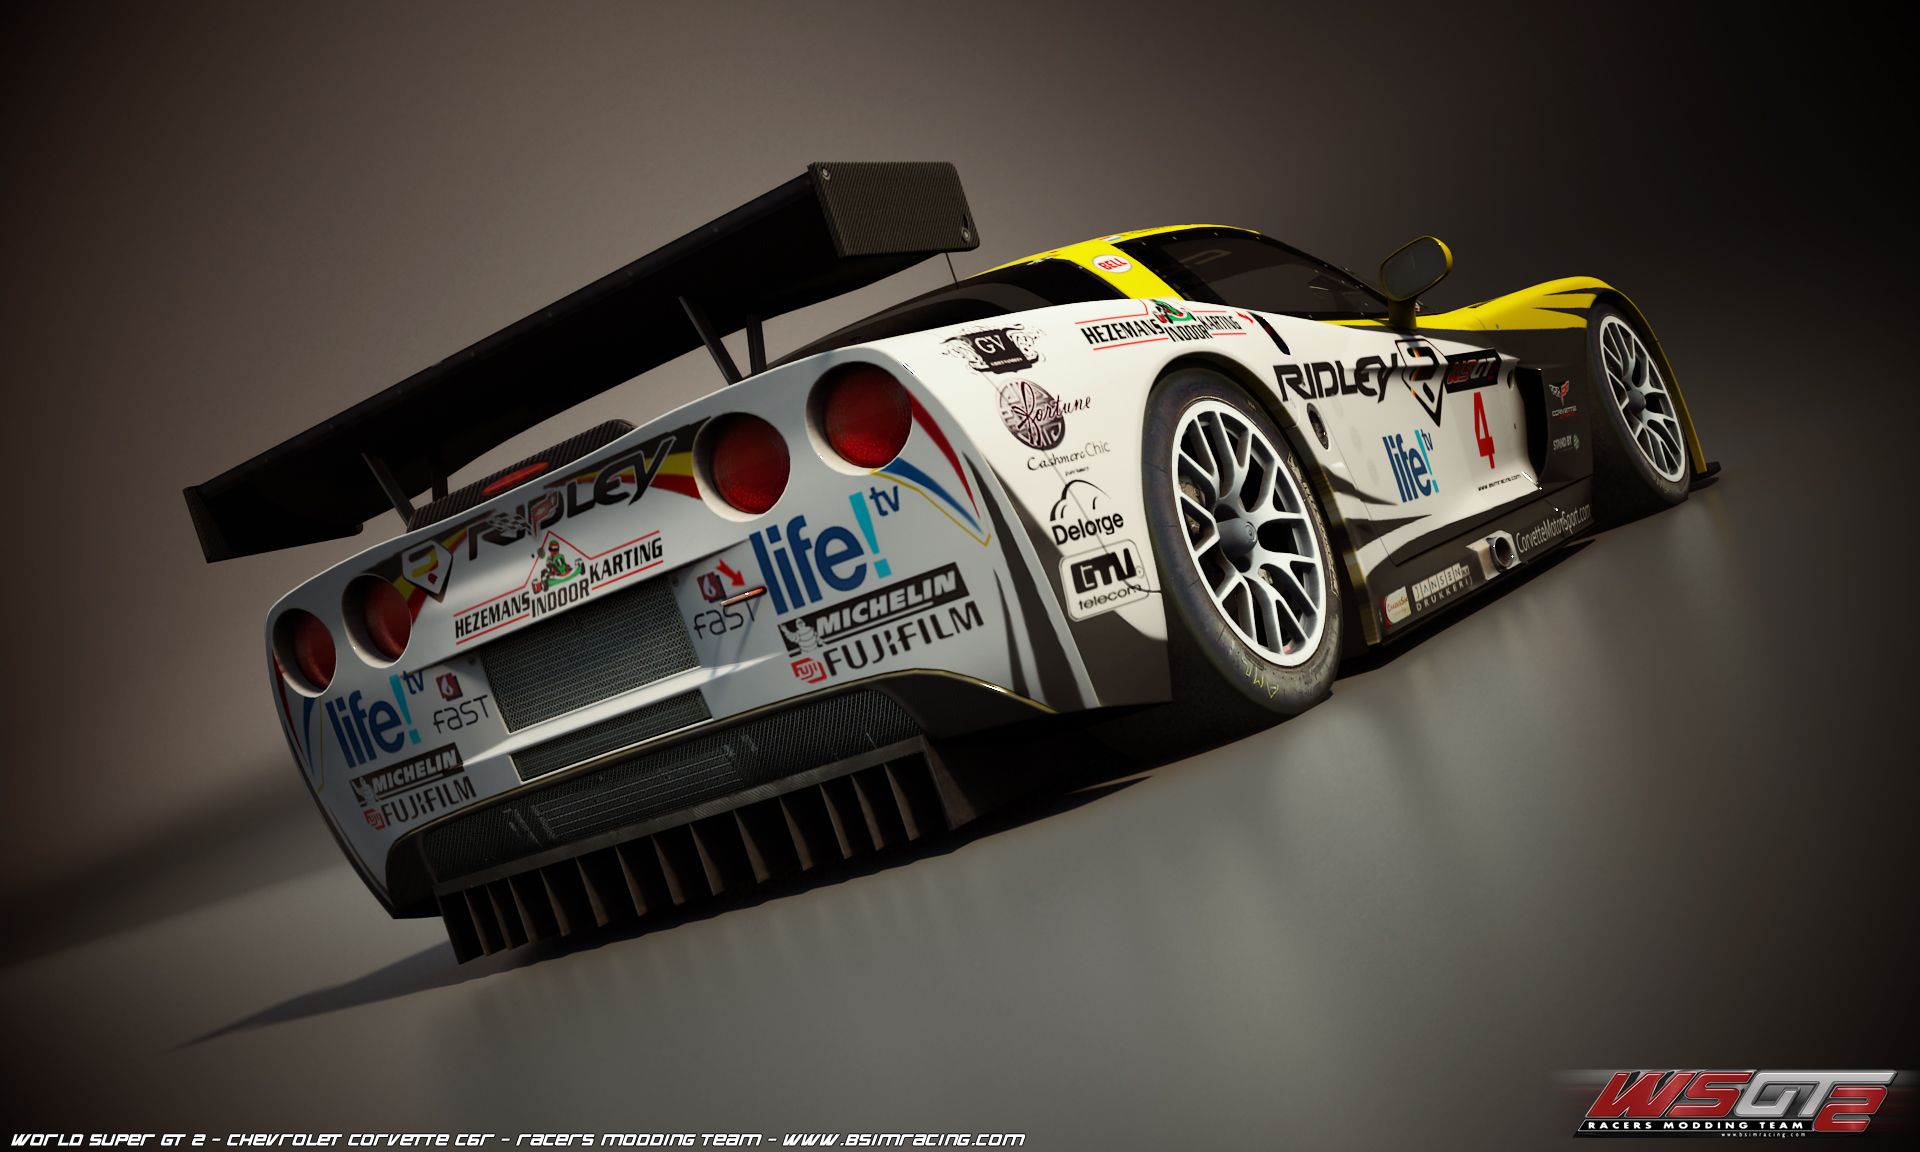 World Super GT 2 - Corvette Wallpapers | VirtualR - Sim Racing News